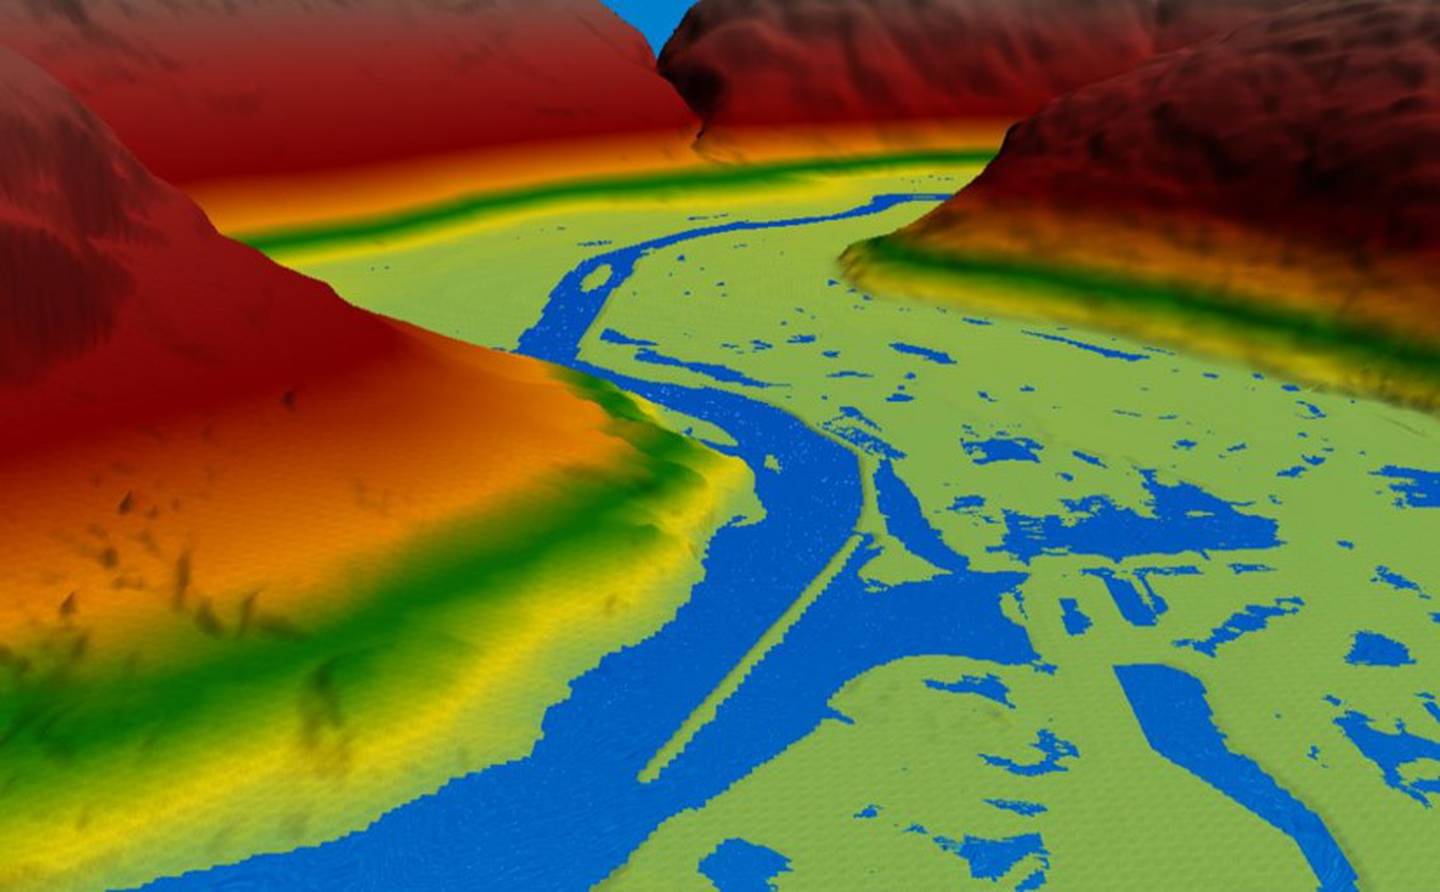 Slike digitale modeller brukes i SamVann-prosjektet for å simulere vannets vei gjennom terrenget. Dermed kan forskerne finne ut hvilke områder som vil bli oversvømt hvis flommen kommer, og dermed også hvilke bygninger, veier og andre ting som kan bli rammet av flommen.